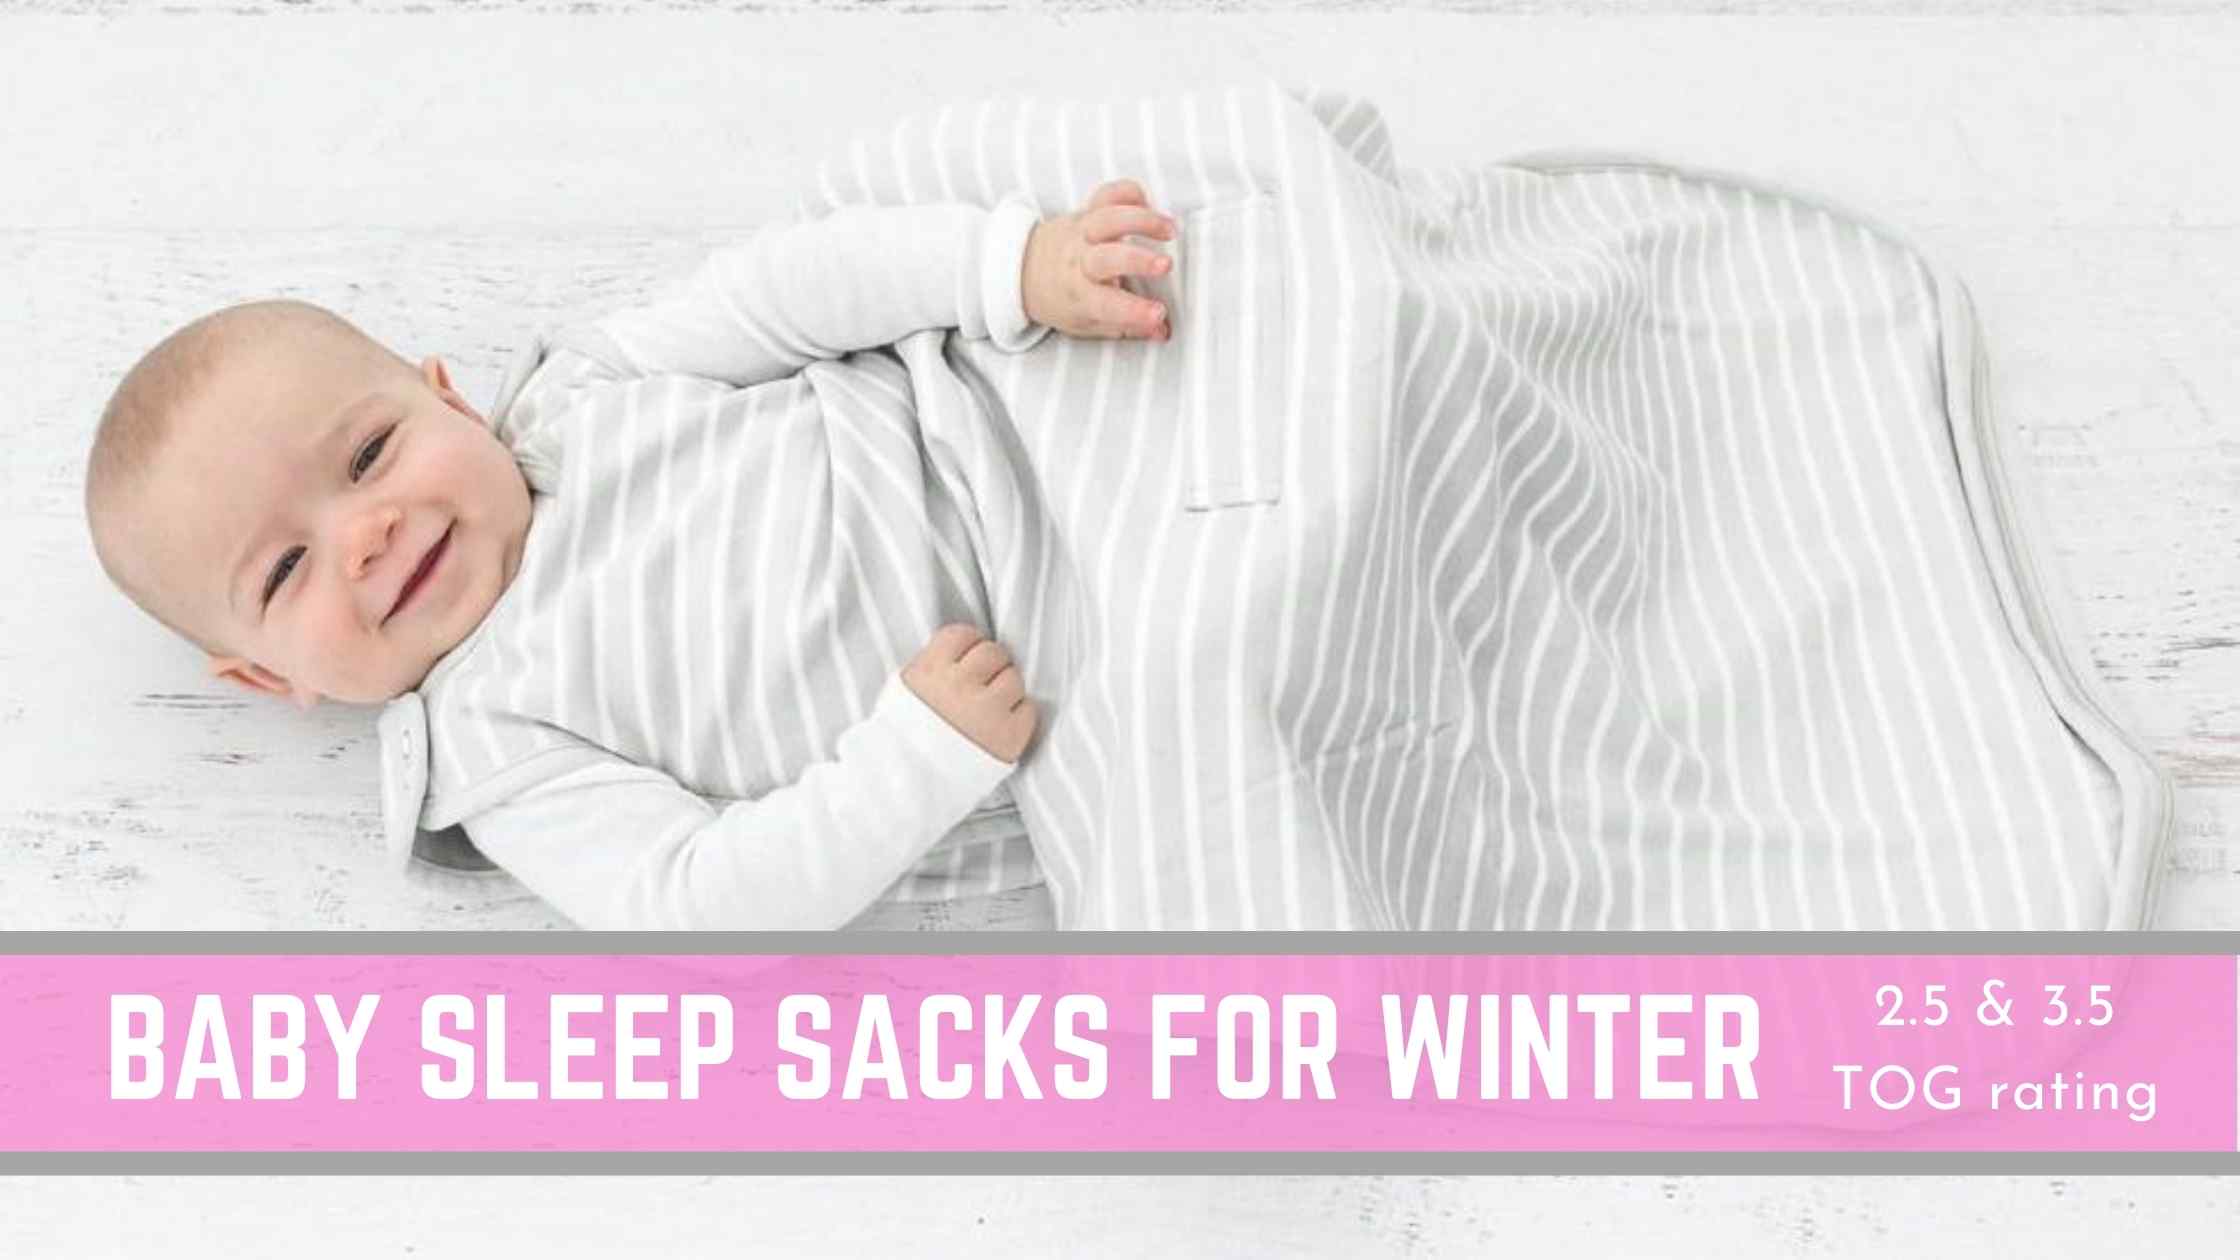 best baby sleep sacks for winter